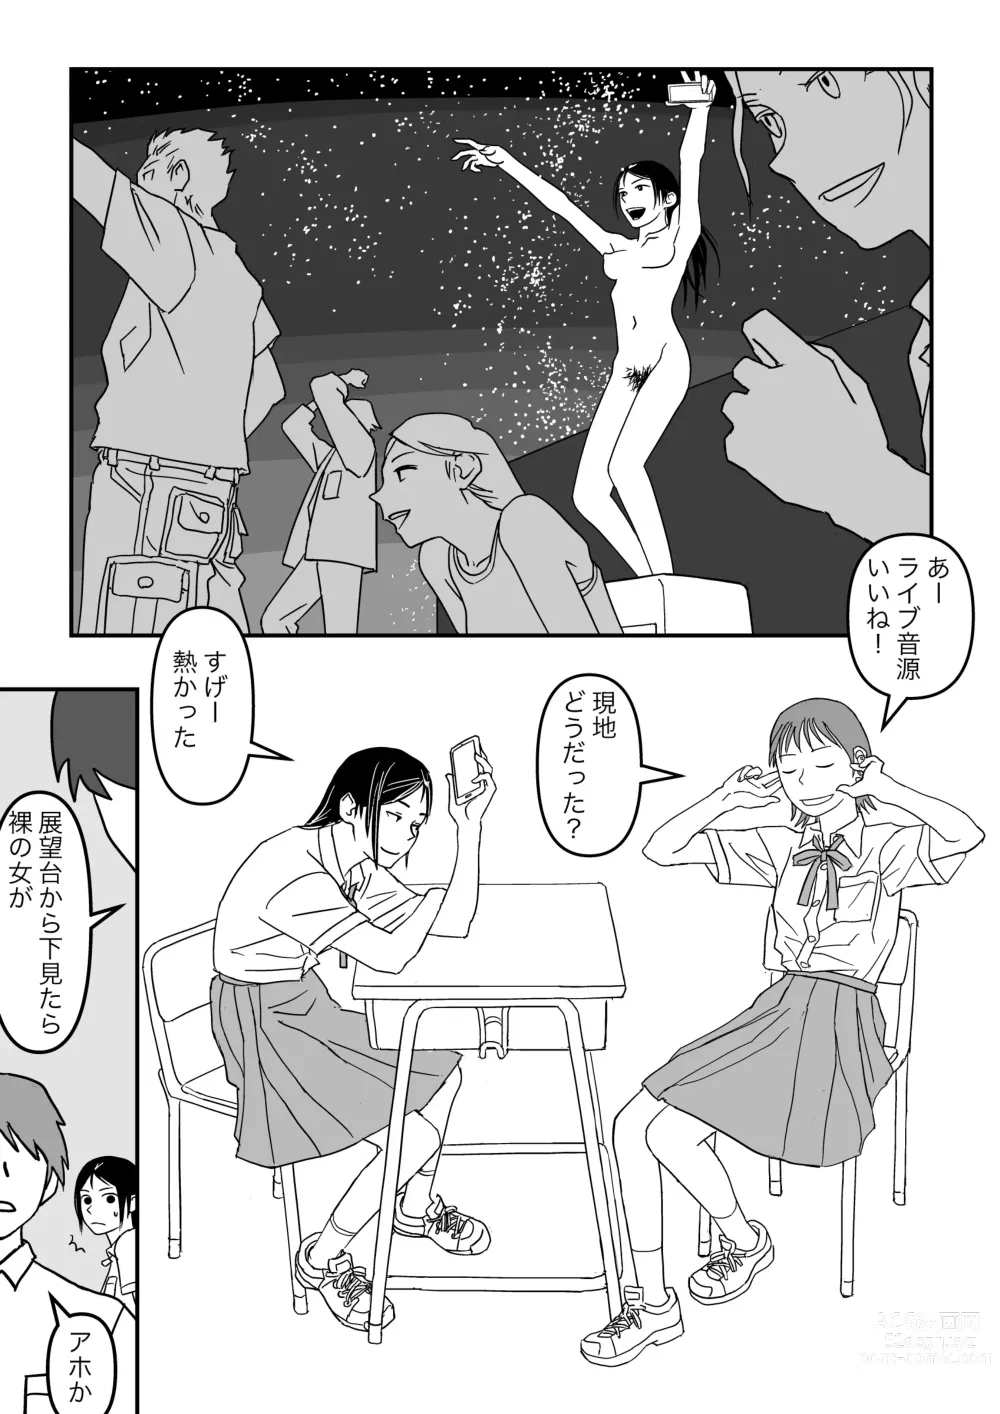 Page 71 of doujinshi Konna Kibun mo Natsu da yo ne